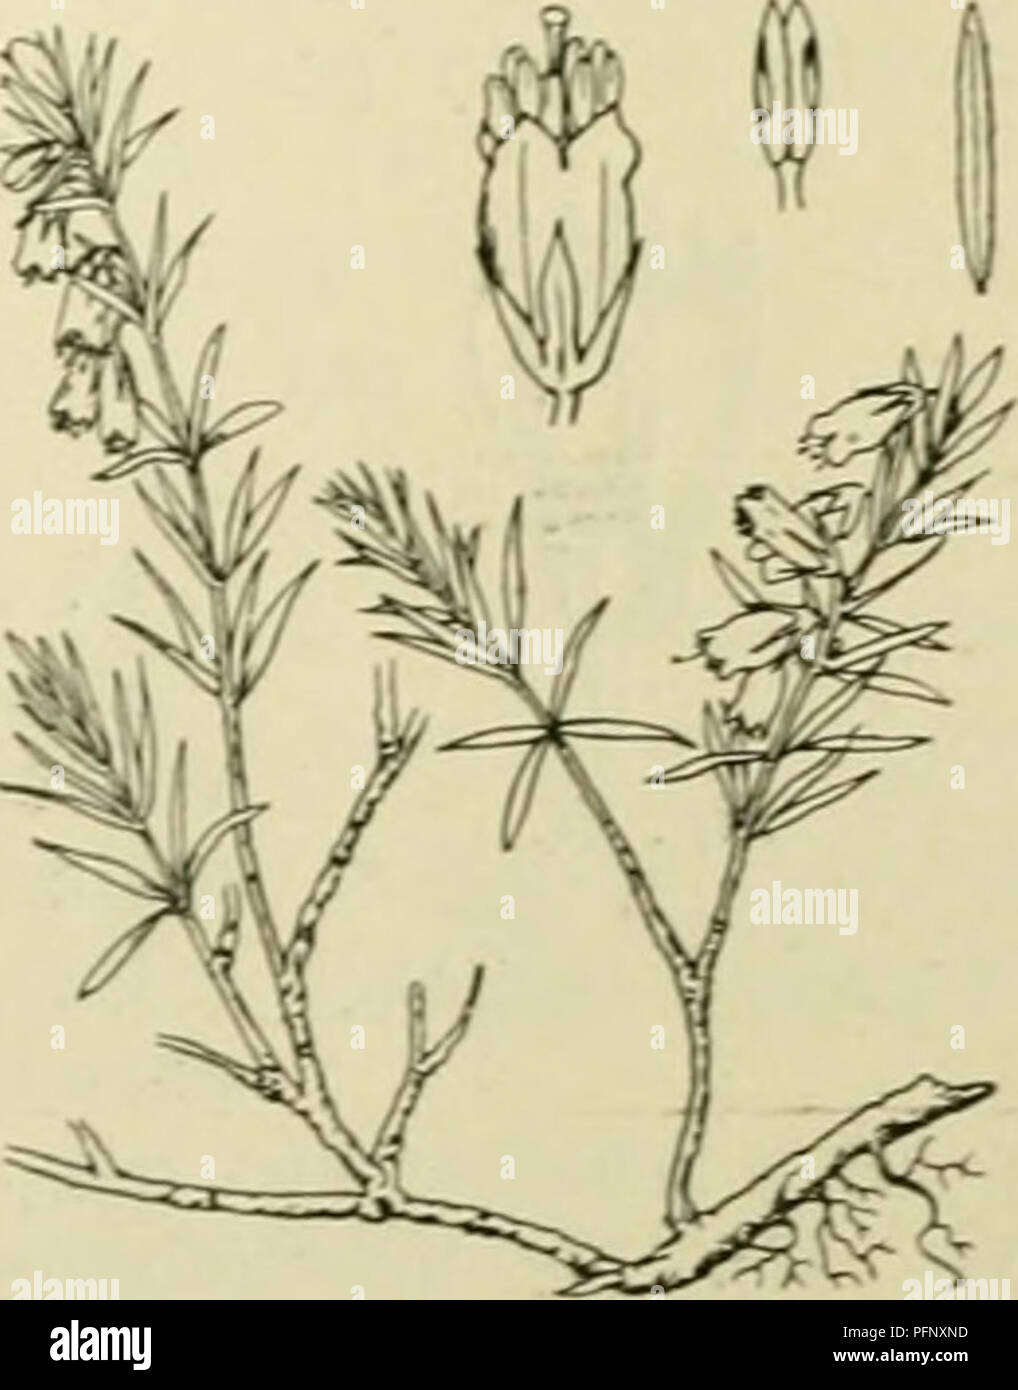 . De flora van Nederland. Plants. Erica Tetralix Fig. 24. b. Hclmknopjcs in do liloeinkroon innesloten, op de ruKzijdc aan de helmdraden be- vestigd. Bloemen roodviolet, in kransen staand en vericnjjde trossen vormend. Bloomkroon 5-7 niM lan.t;. Stijl weinig uitstekend K. cluerea biz. 24. E. Tetralix') L. Dopheide (fig. 24). Deze plant is een rechtopstaande, vertakte, dicht bebladerde heester. De stengel is bruin gekleurd, de jonge takken zijn bruinrood, met fijne witte viltharen en enkele klier- haren bekleed. De bladen staan in kransen van 4(-3), zijn lijnvormig-langwerpig tot lijnvormig, 4  Stock Photo